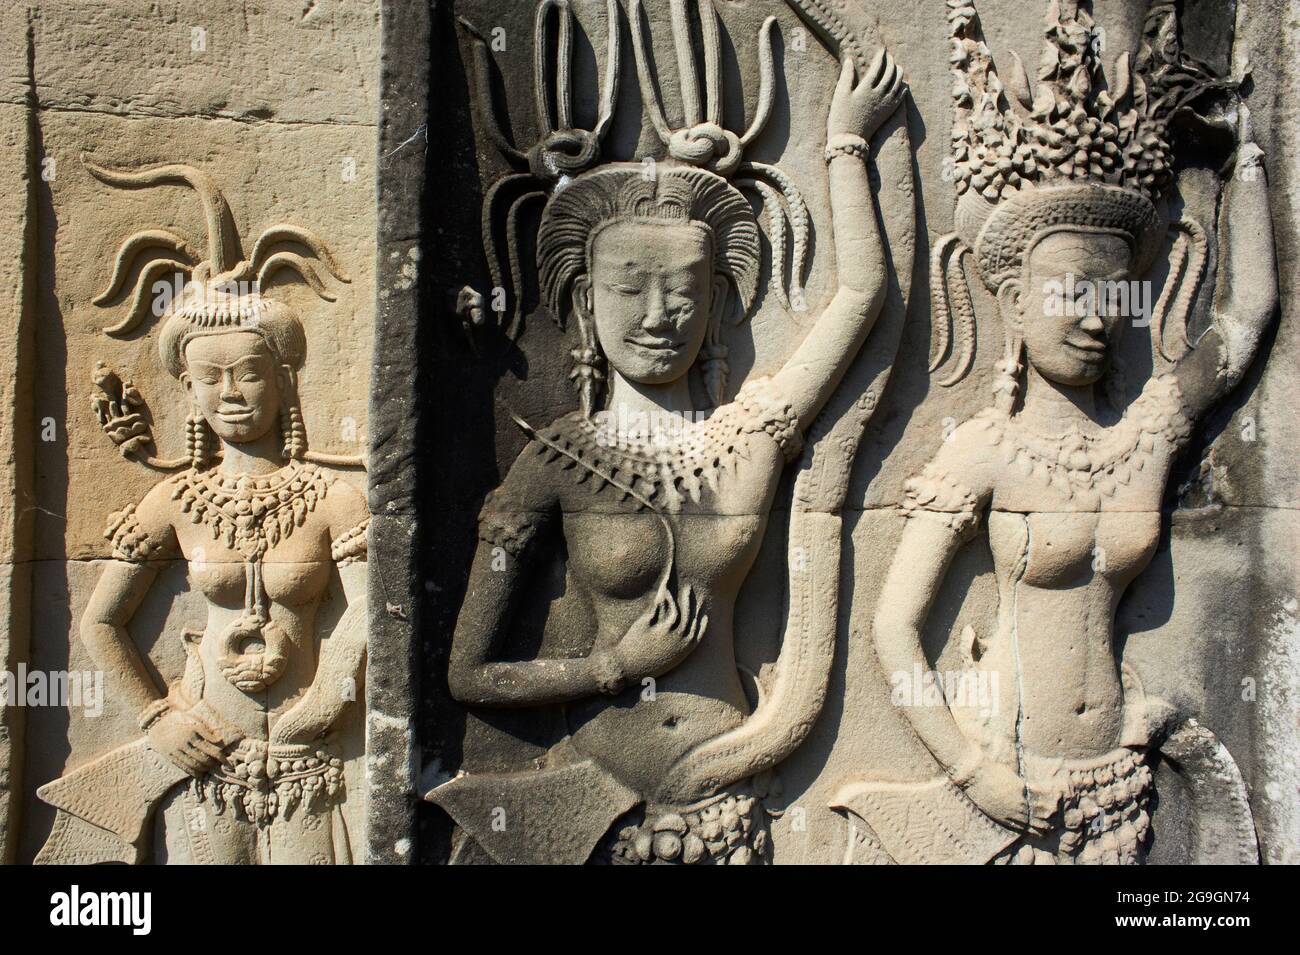 Sud-est asiatico, Cambogia, provincia di Siem Reap, sito di Angkor, Unseco patrimonio mondiale dell'UNESCO dal 1992, tempio di Angkor Wat (Angkor Vat), XII secolo, Foto Stock